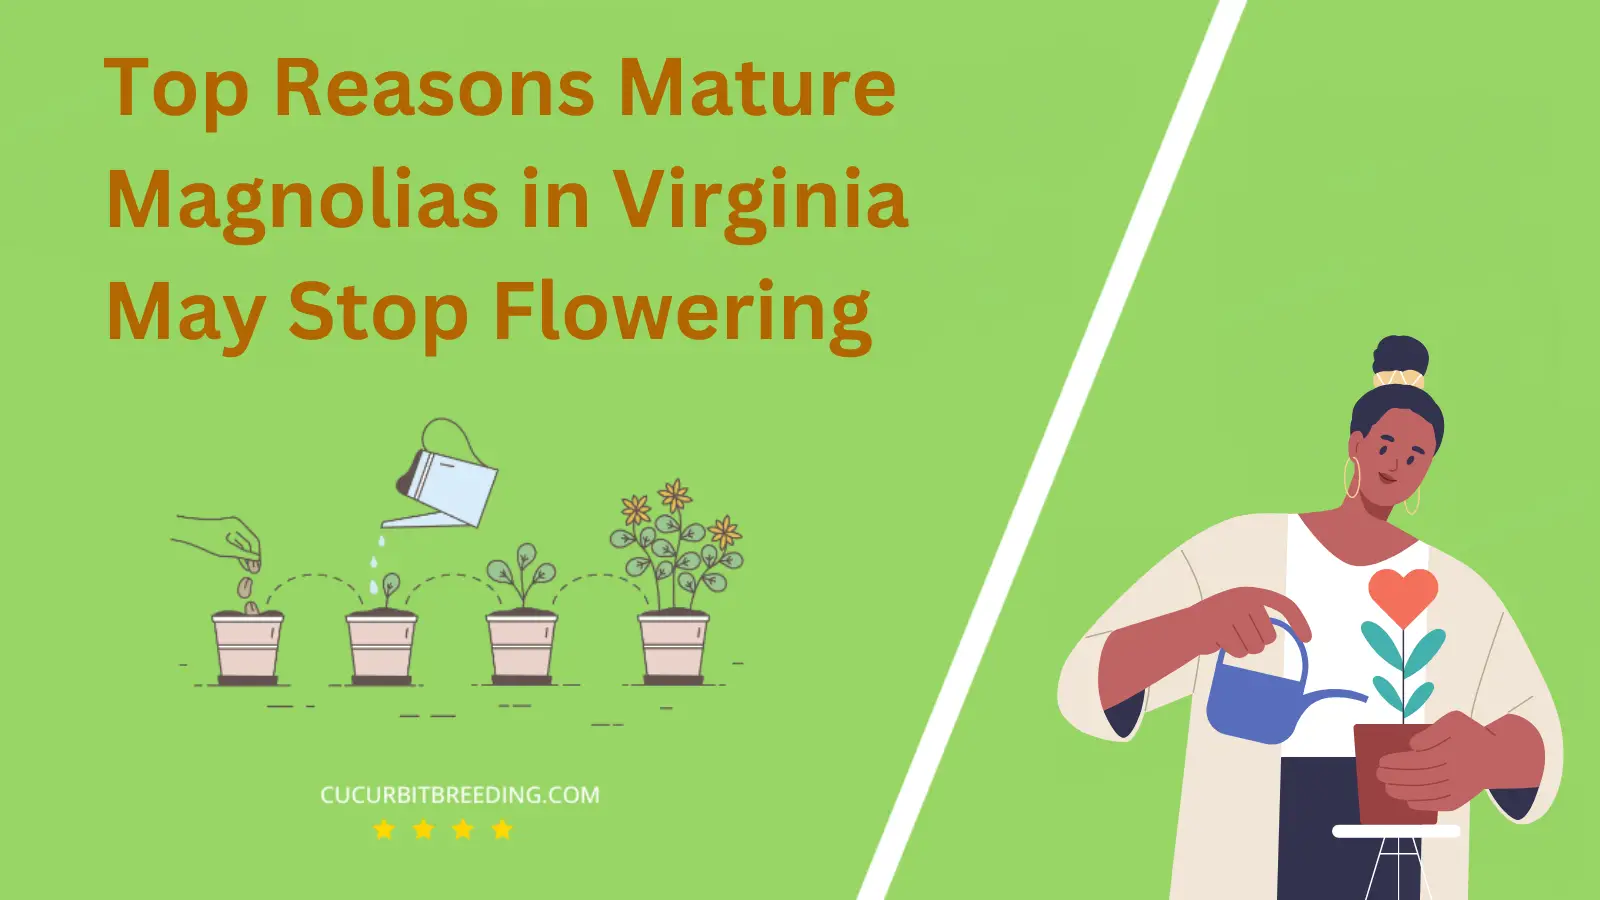 Top Reasons Mature Magnolias in Virginia May Stop Flowering